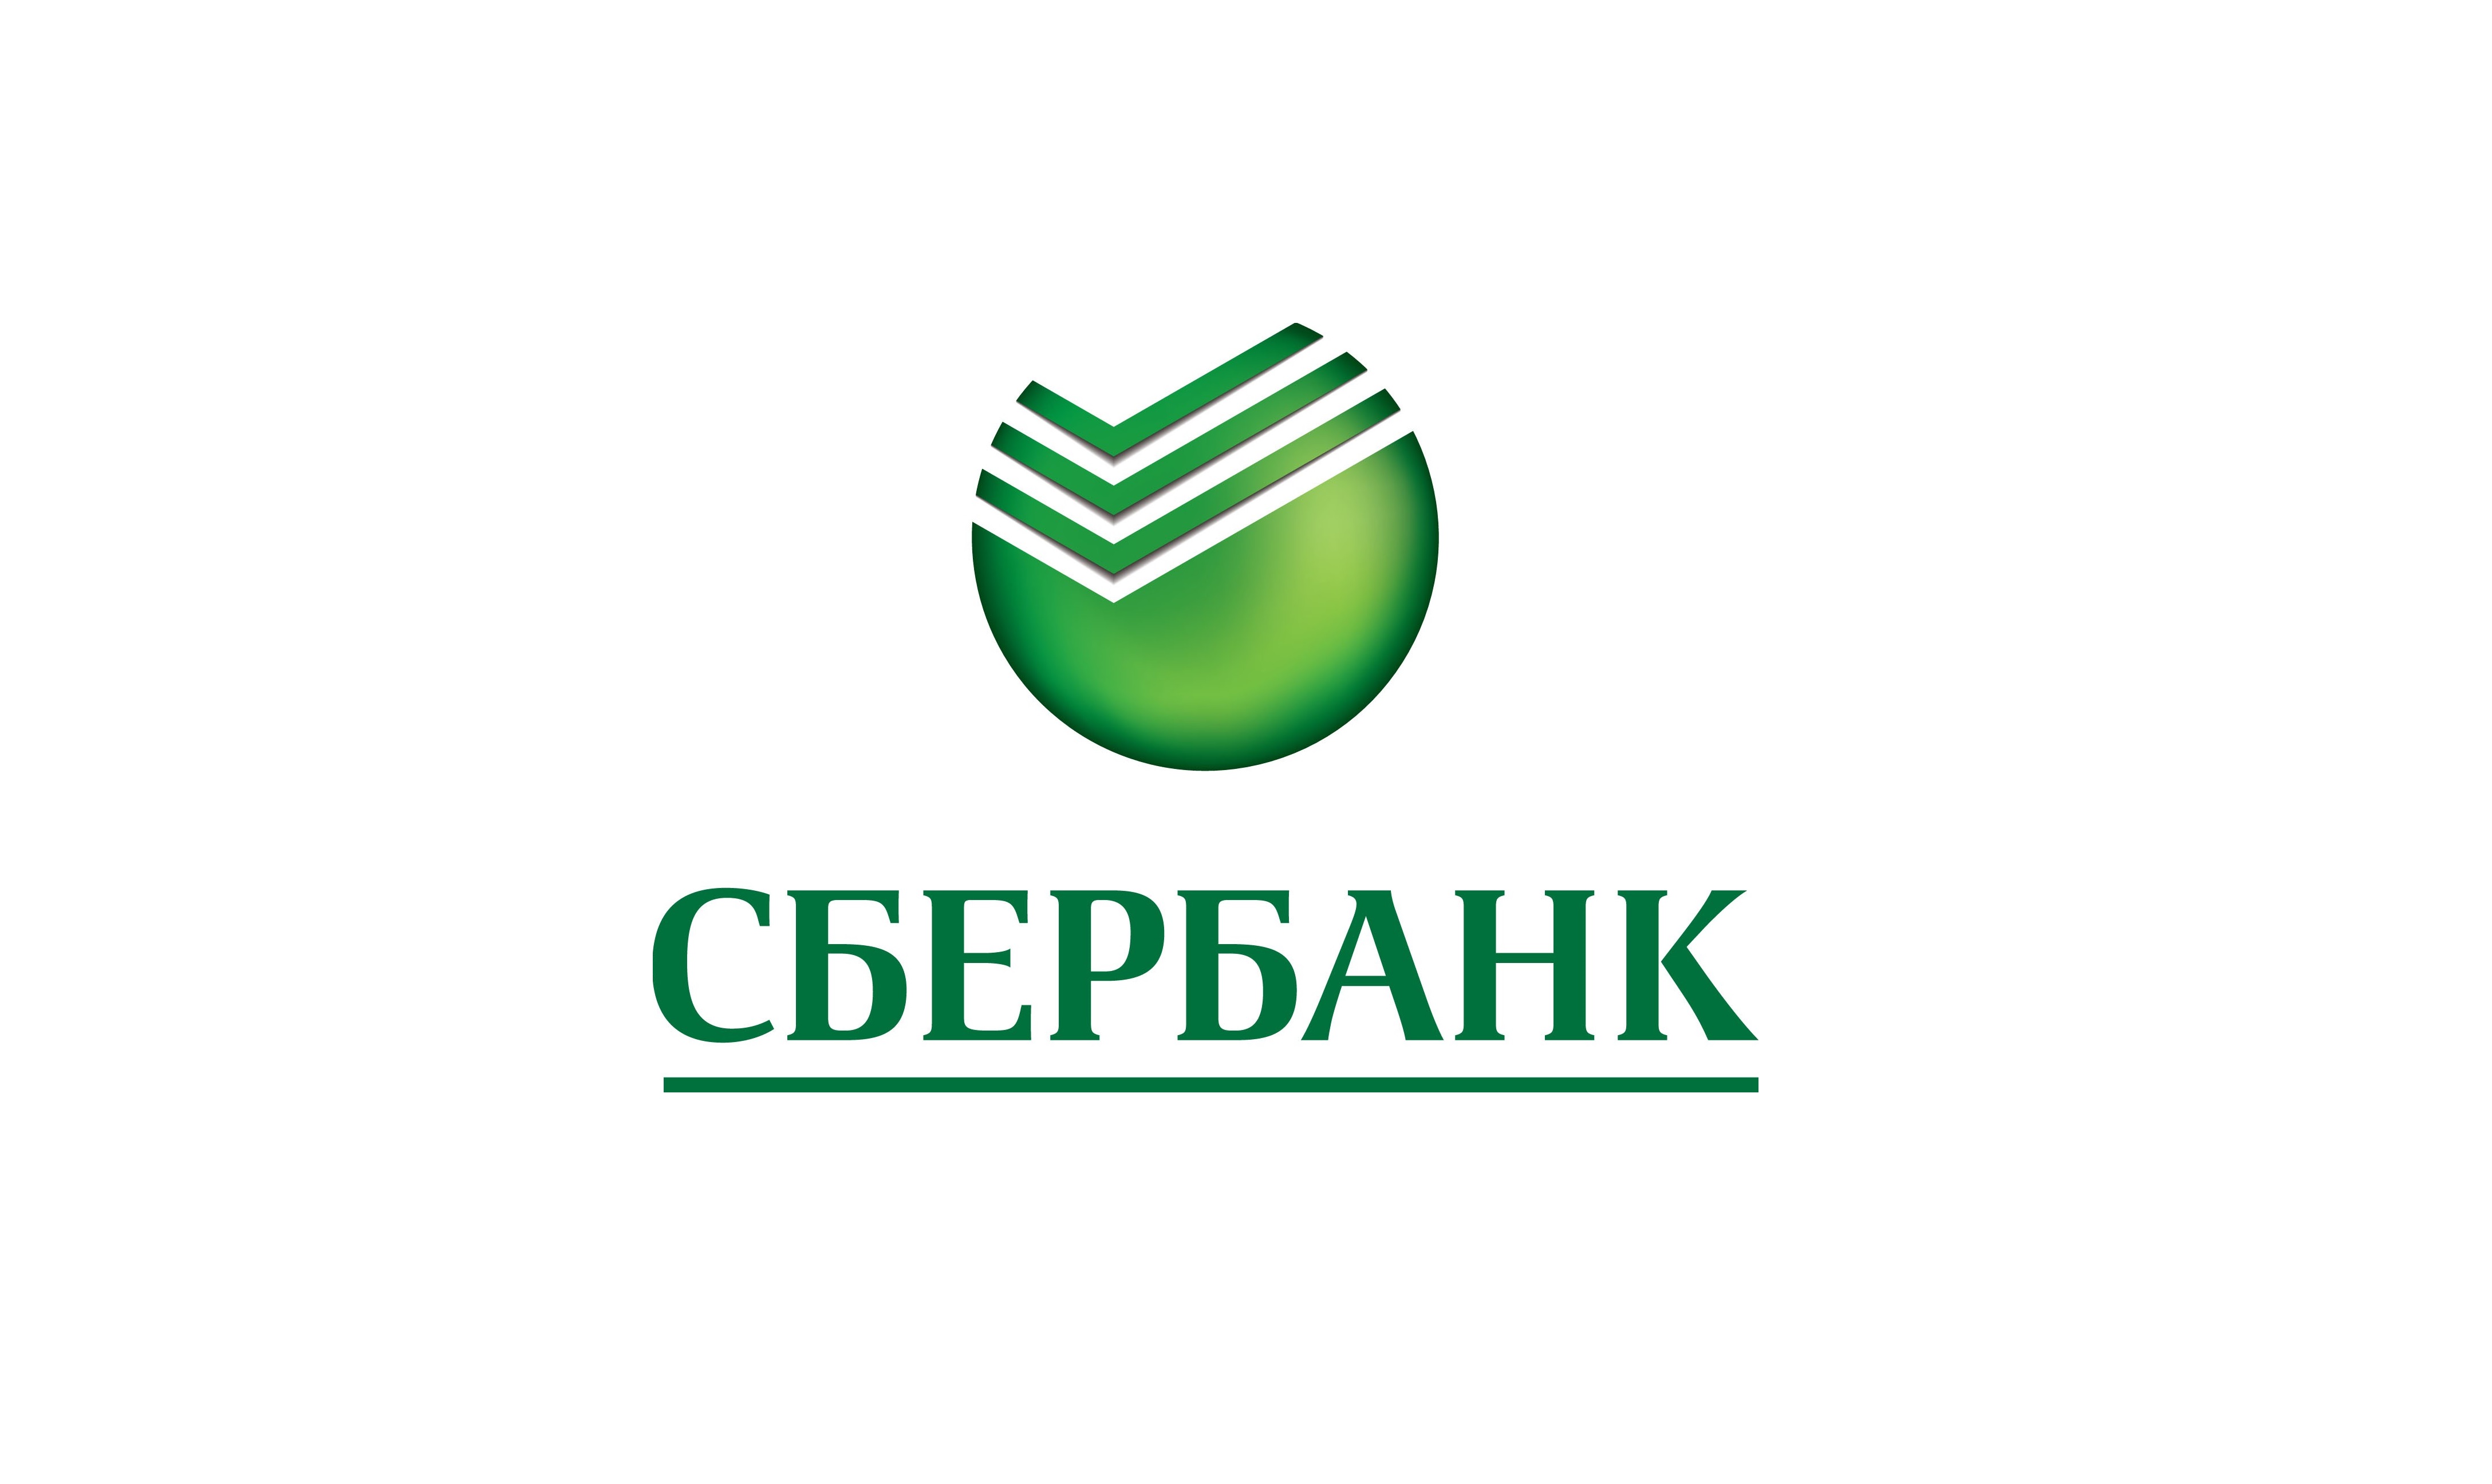 В 2015 году Сбербанк выдал малому бизнесу около 200 млрд рублей